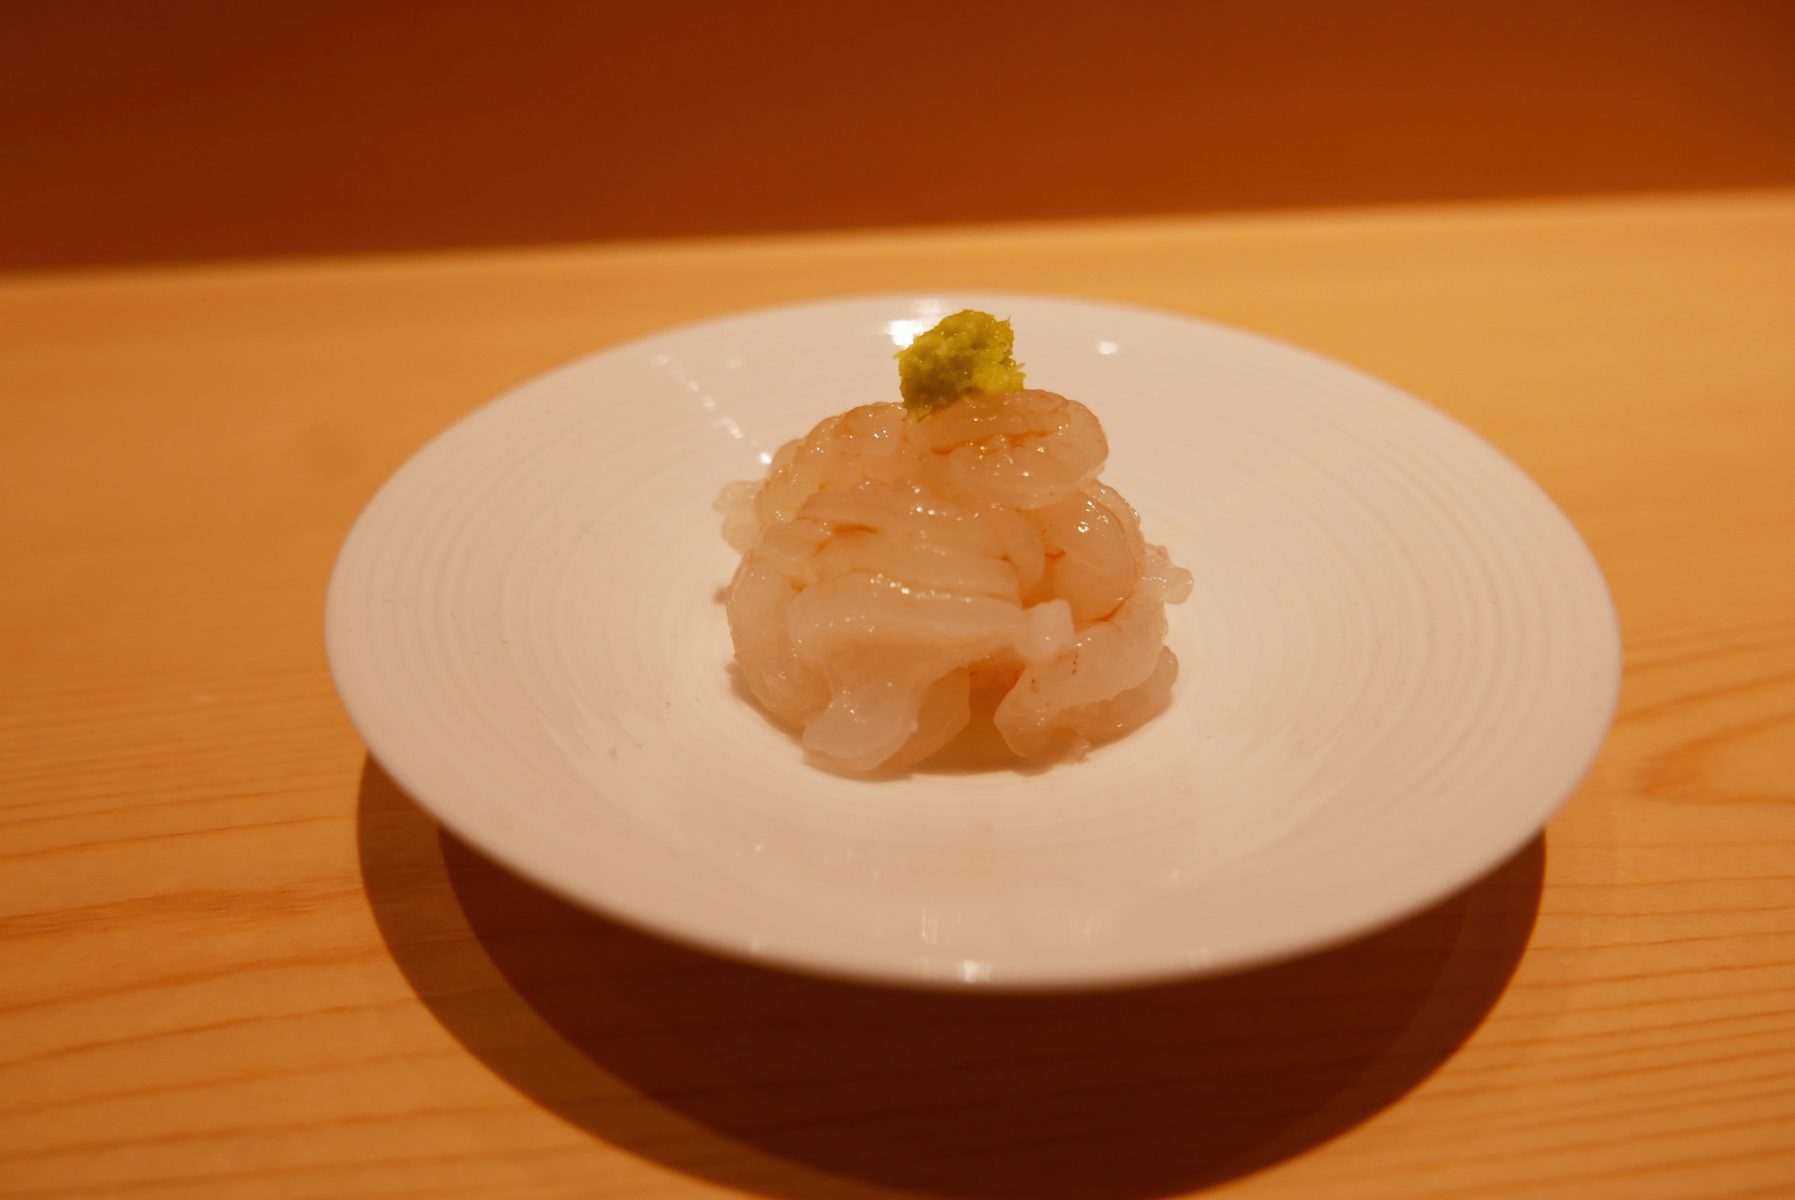 Shiro ebi (white shrimp)